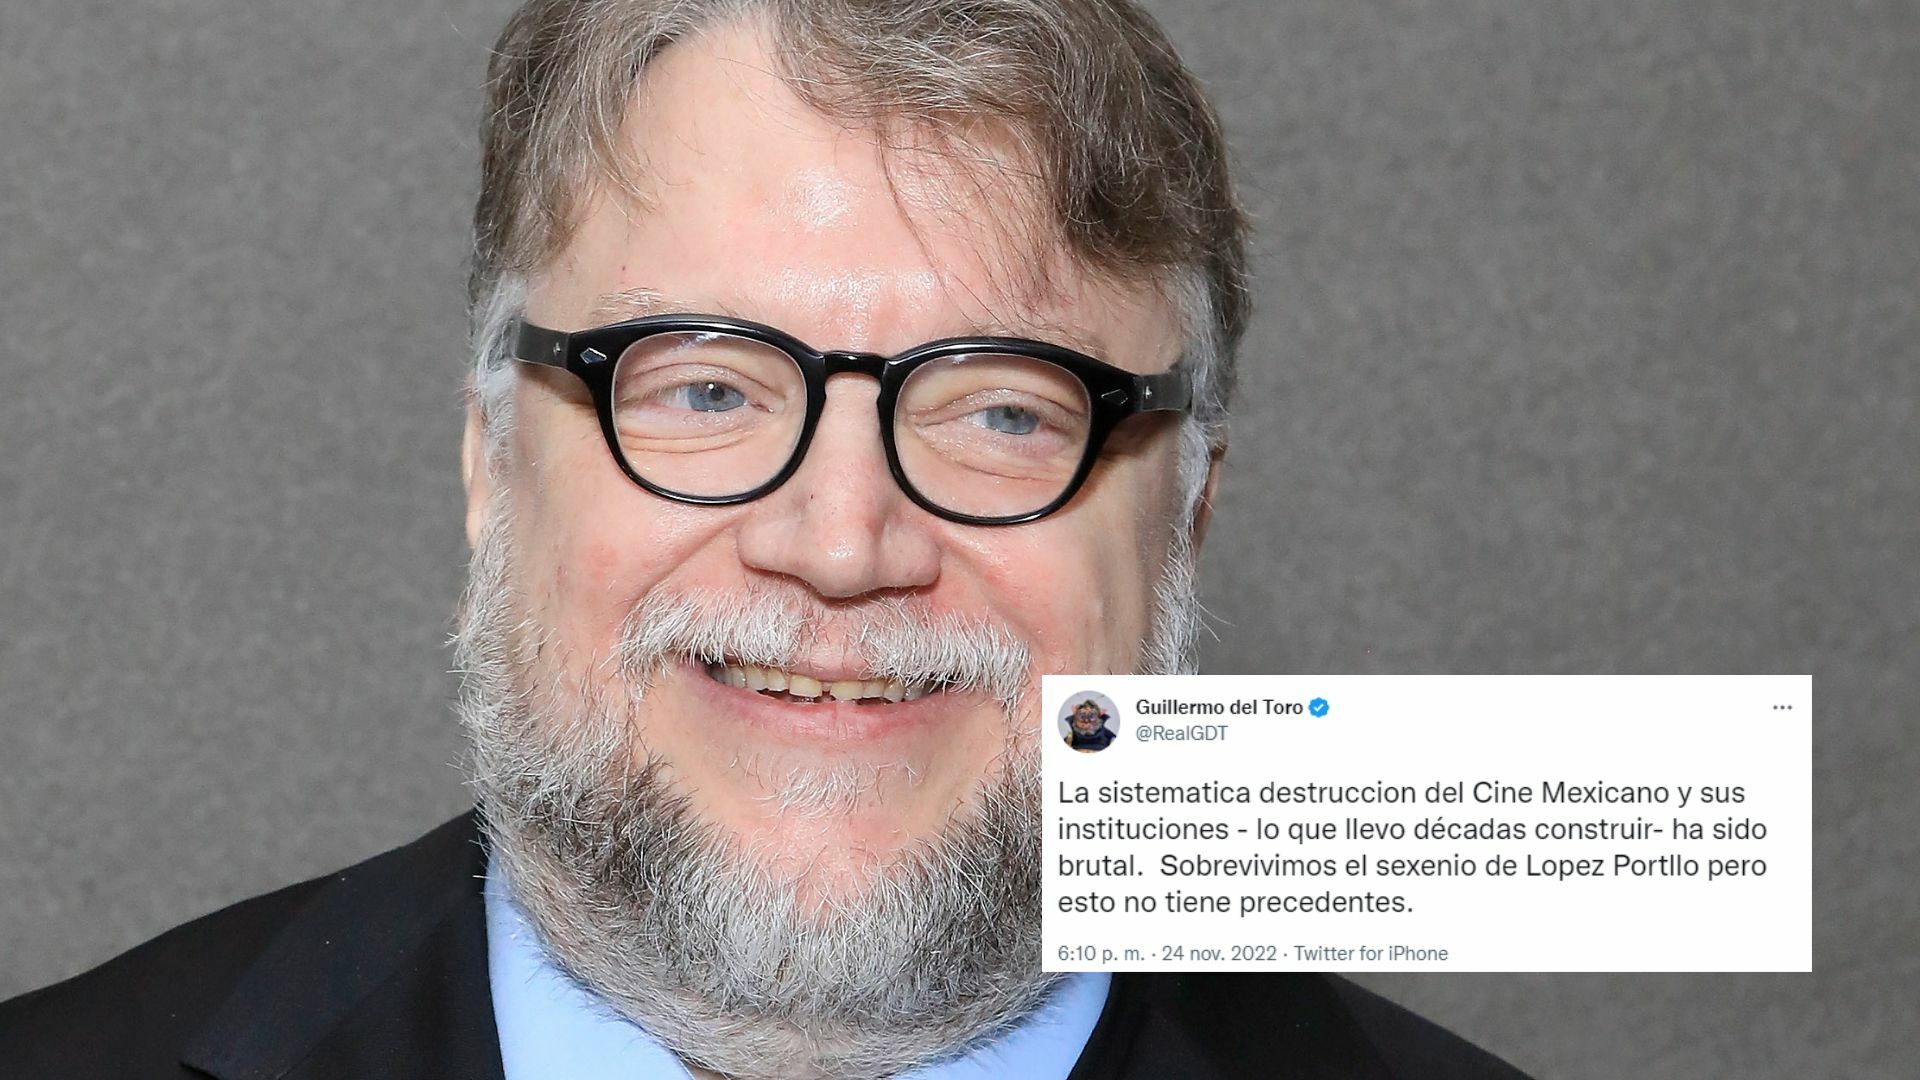 La sistemática destrucción del cine mexicano ha sido brutal: Guillermo del Toro